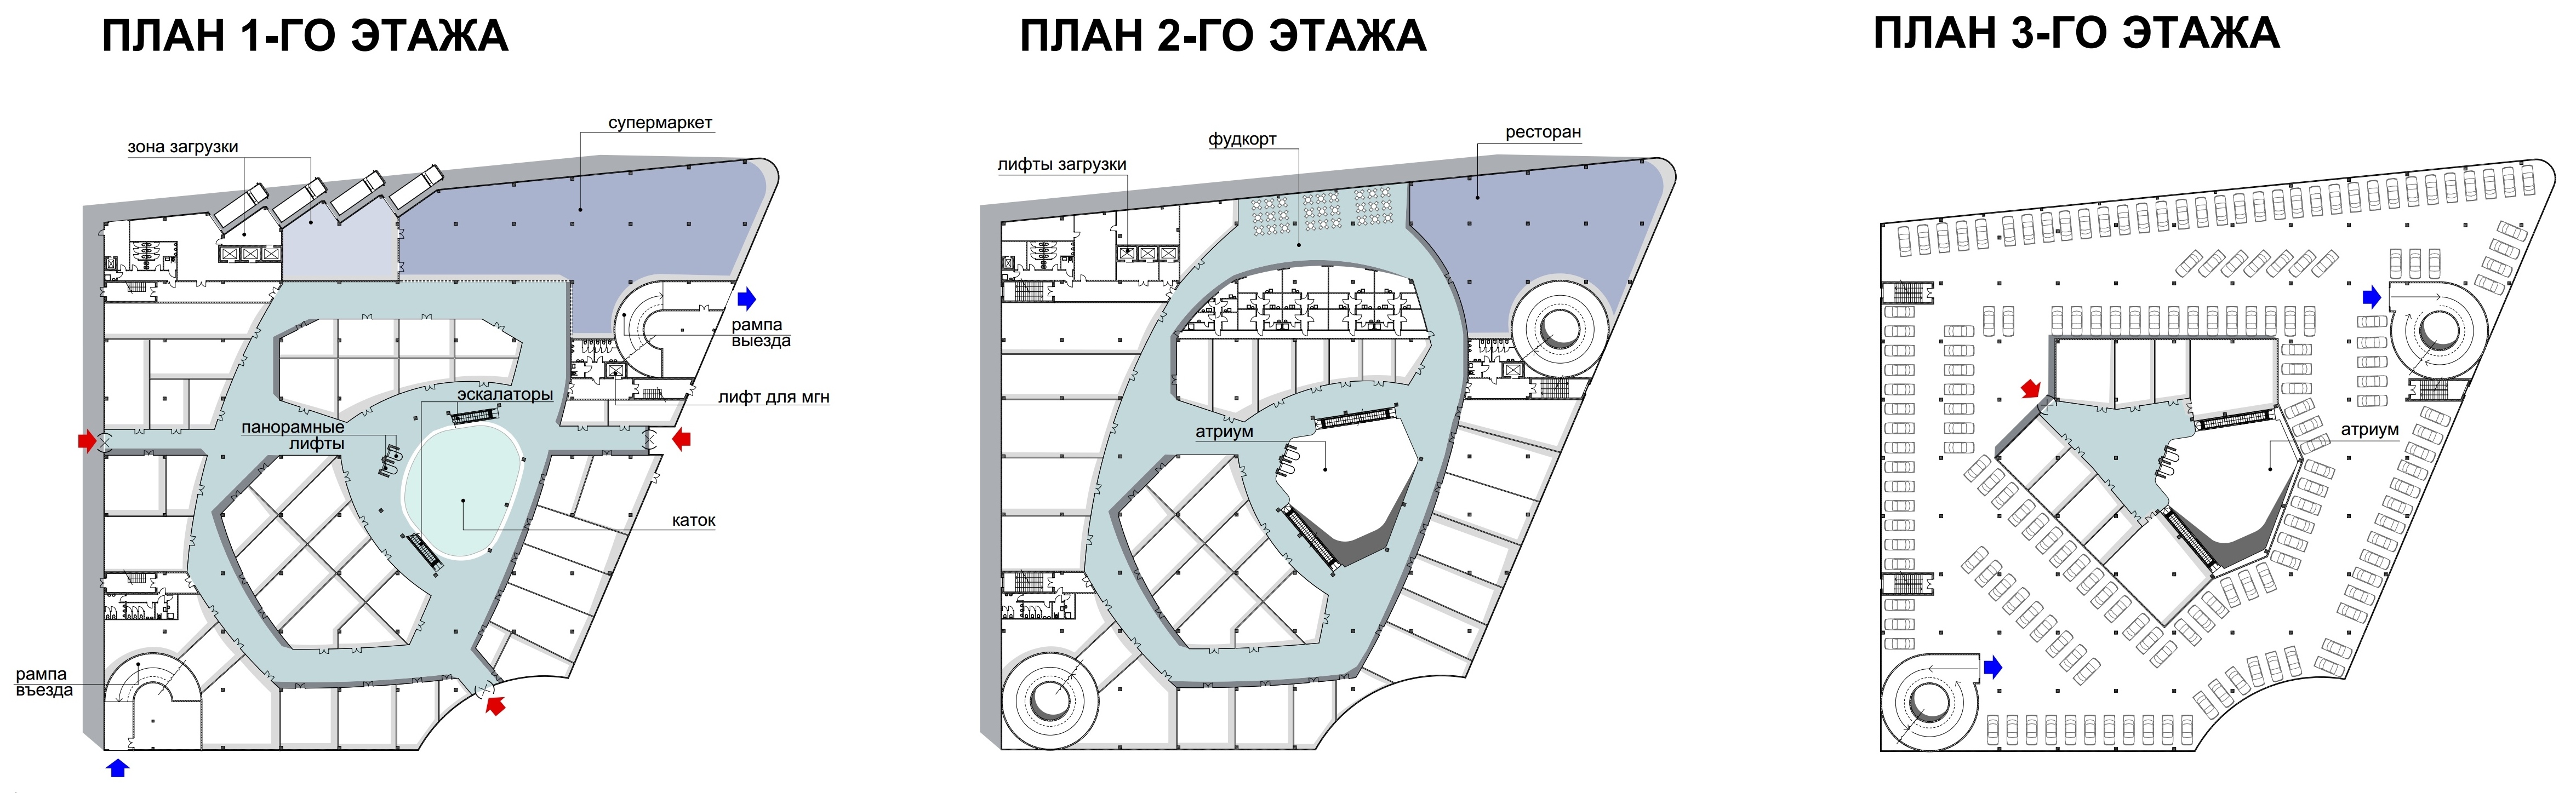 Карта развлекательный центр. Атриум схема магазинов 1 этаж. Атриум Москва схема магазинов. Торговый центр с атриумом план. План ТЦ Атриум.